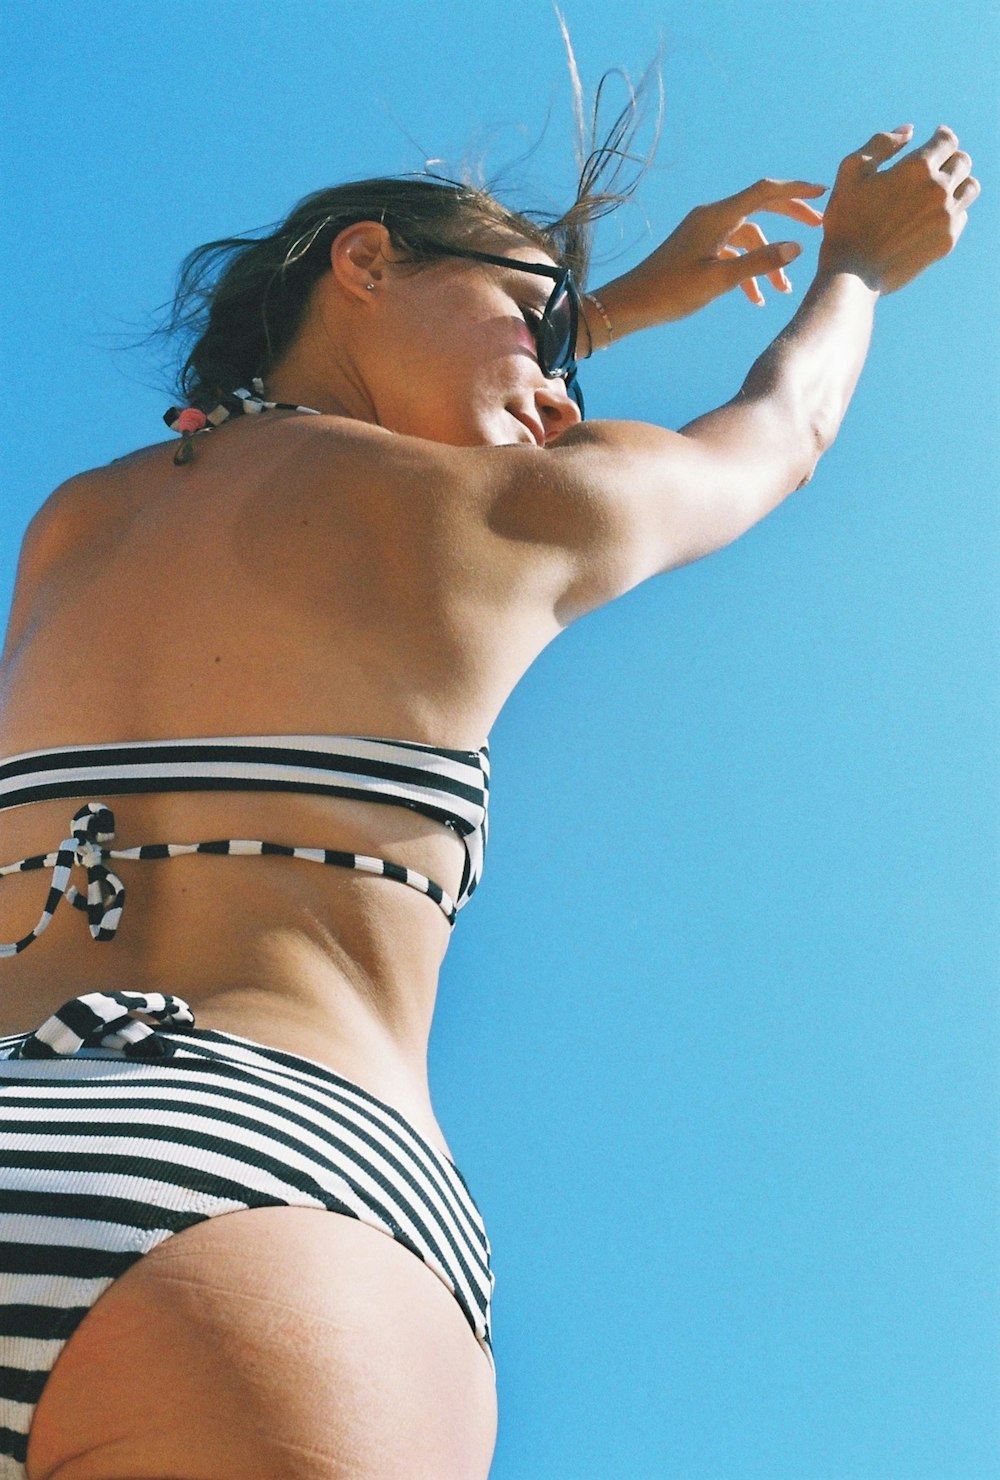 Une femme en bikini rayé fait voler un cerf-volant